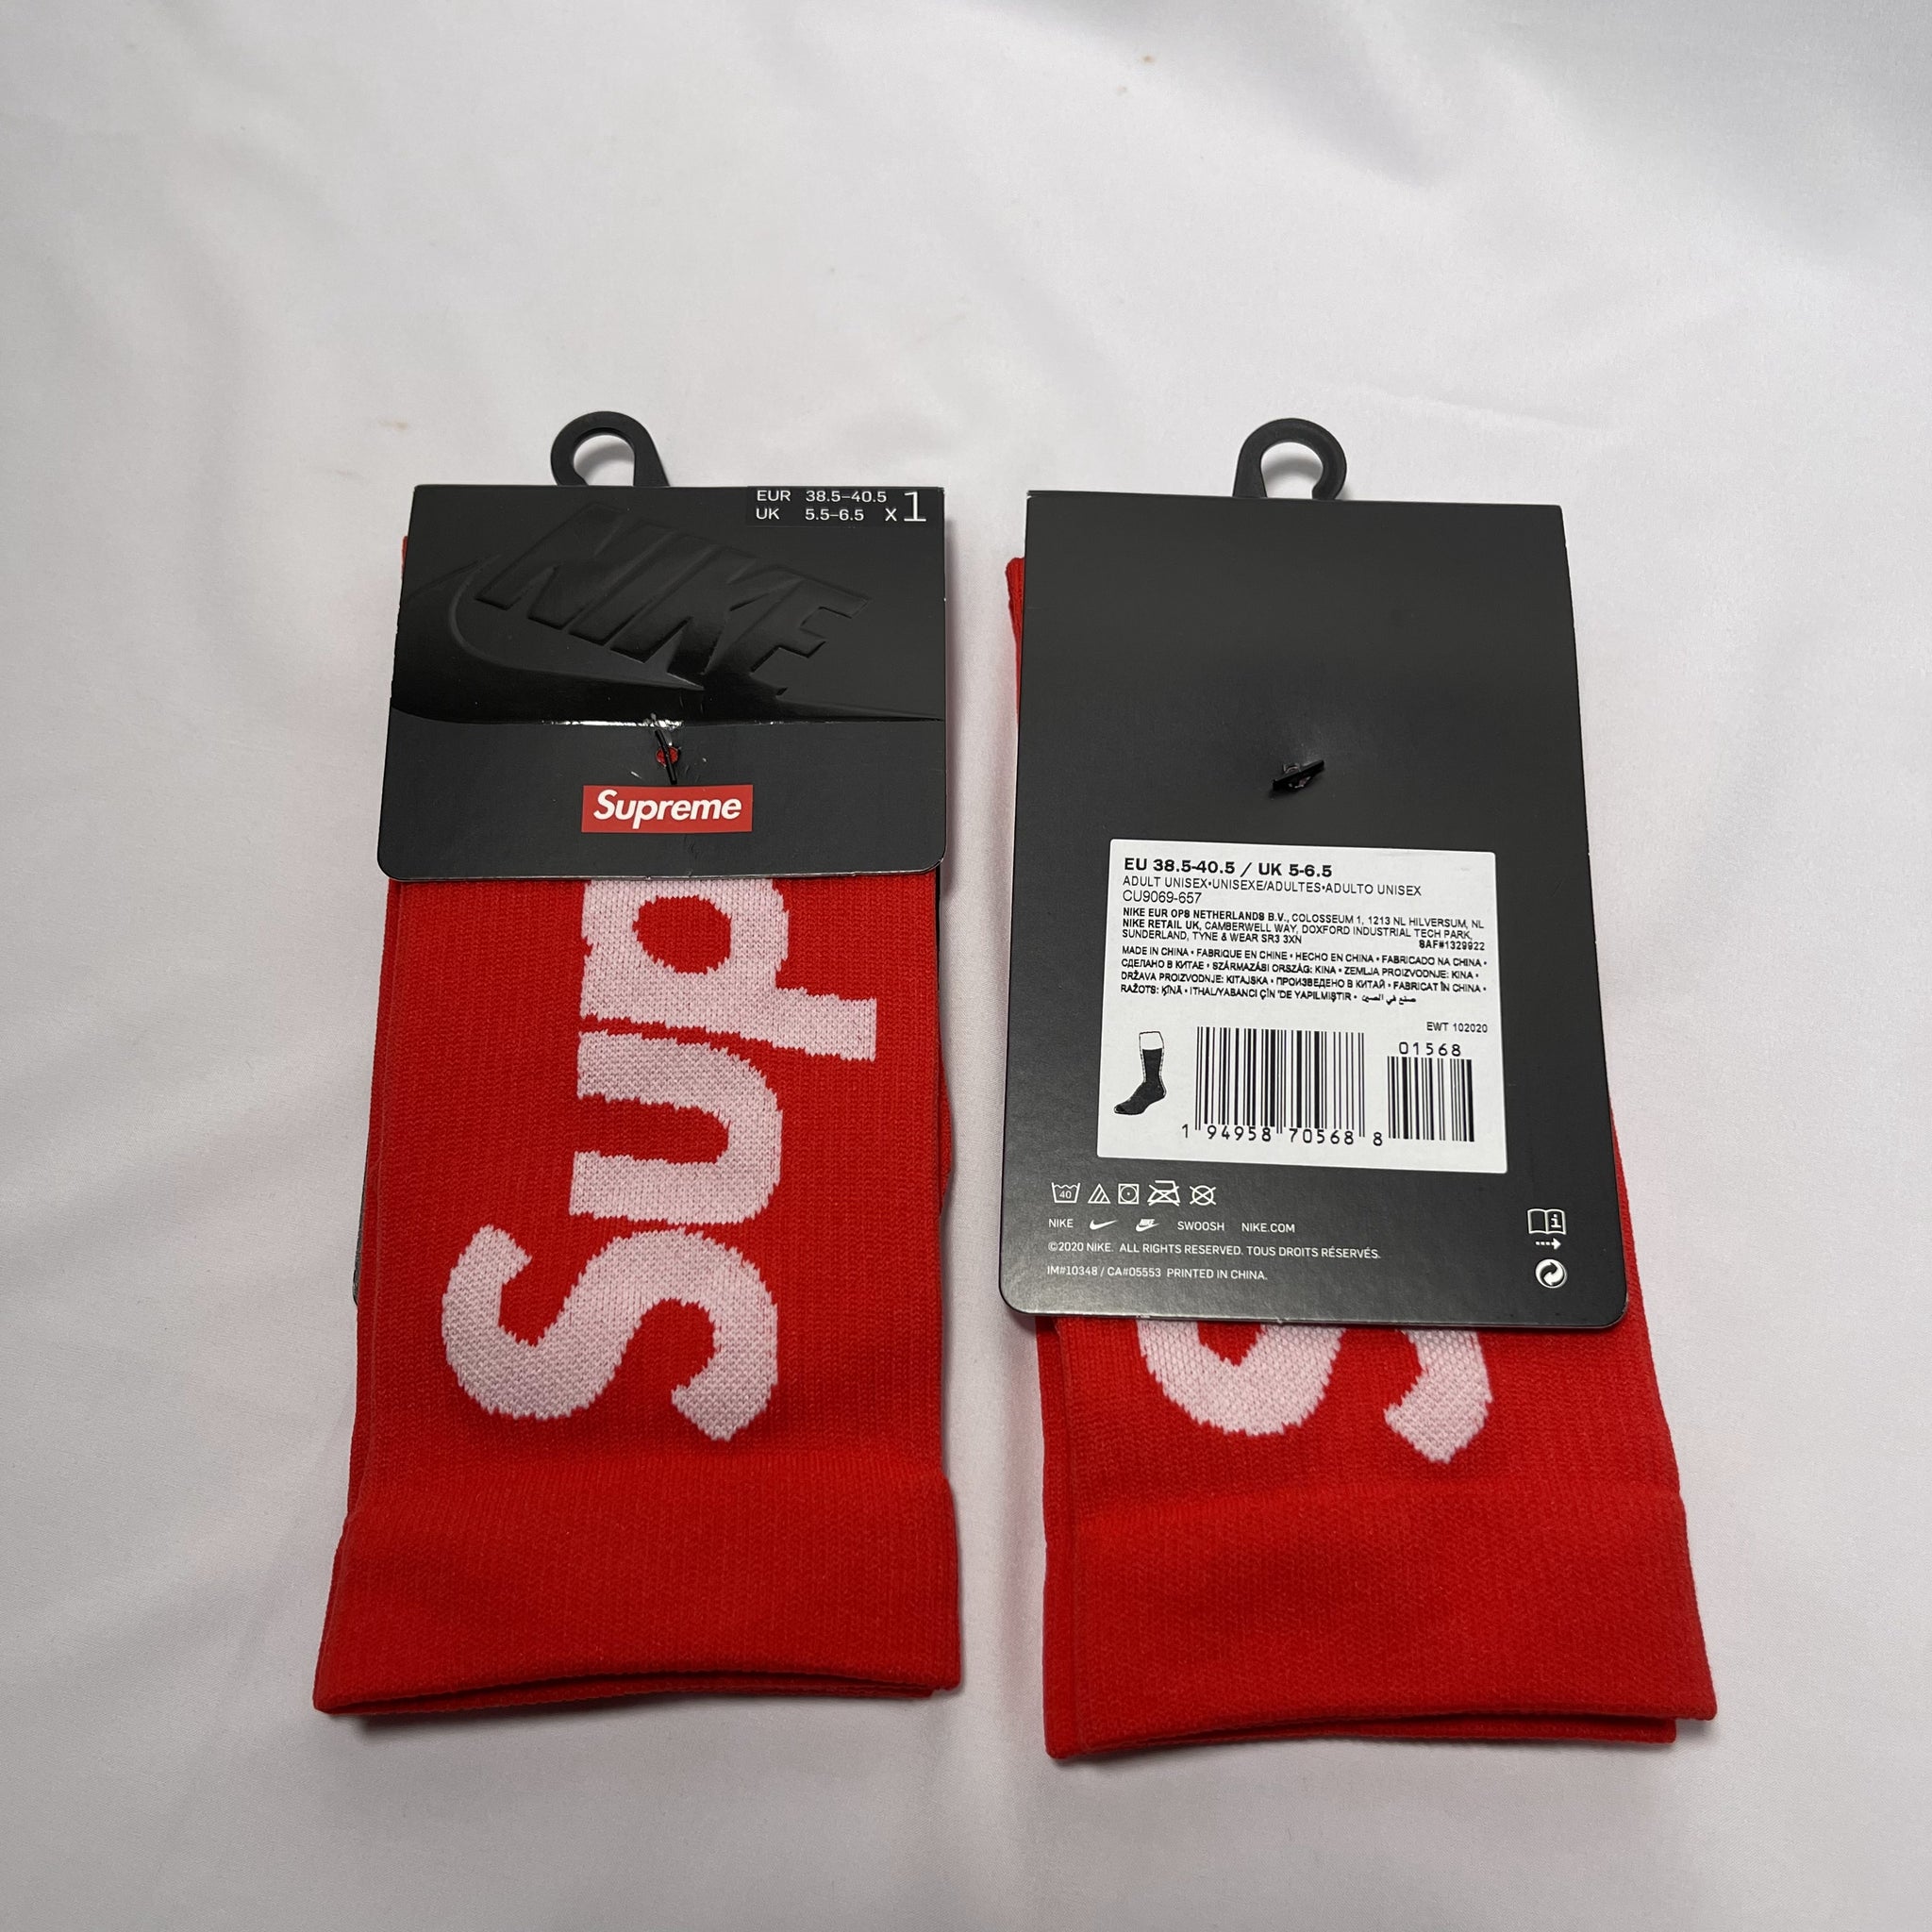 全新 Supreme x Nike Lightweight crew socks red US 6Y-7.5Y eur 38.5-40.5 紅色supreme x nike短襪